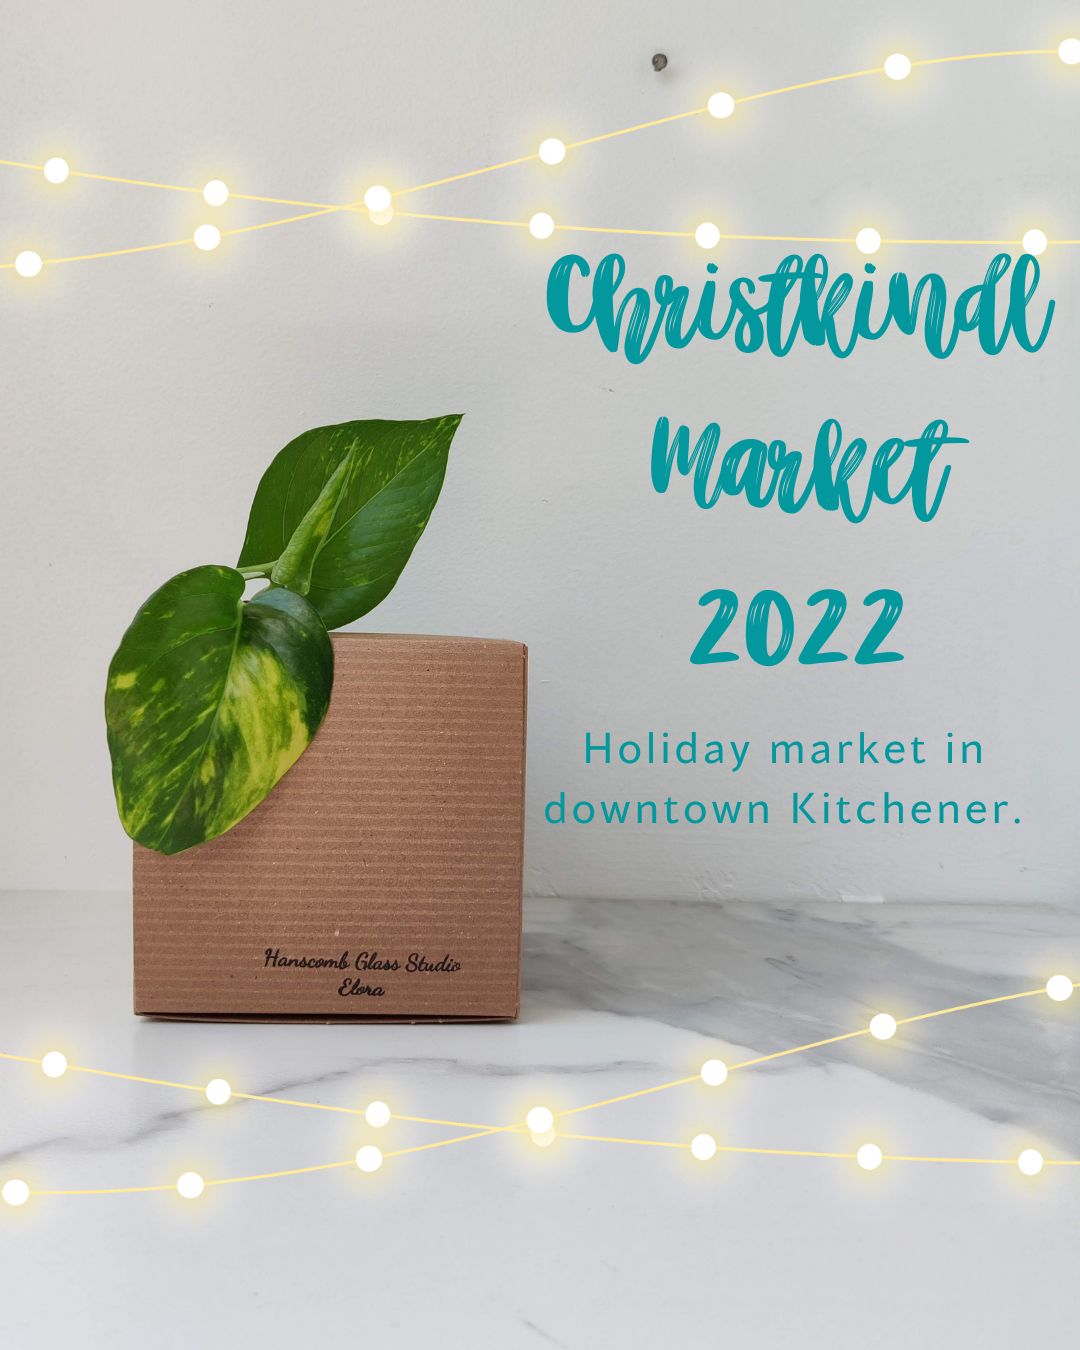 Christkindl Market 2022 - Kitchener, ON